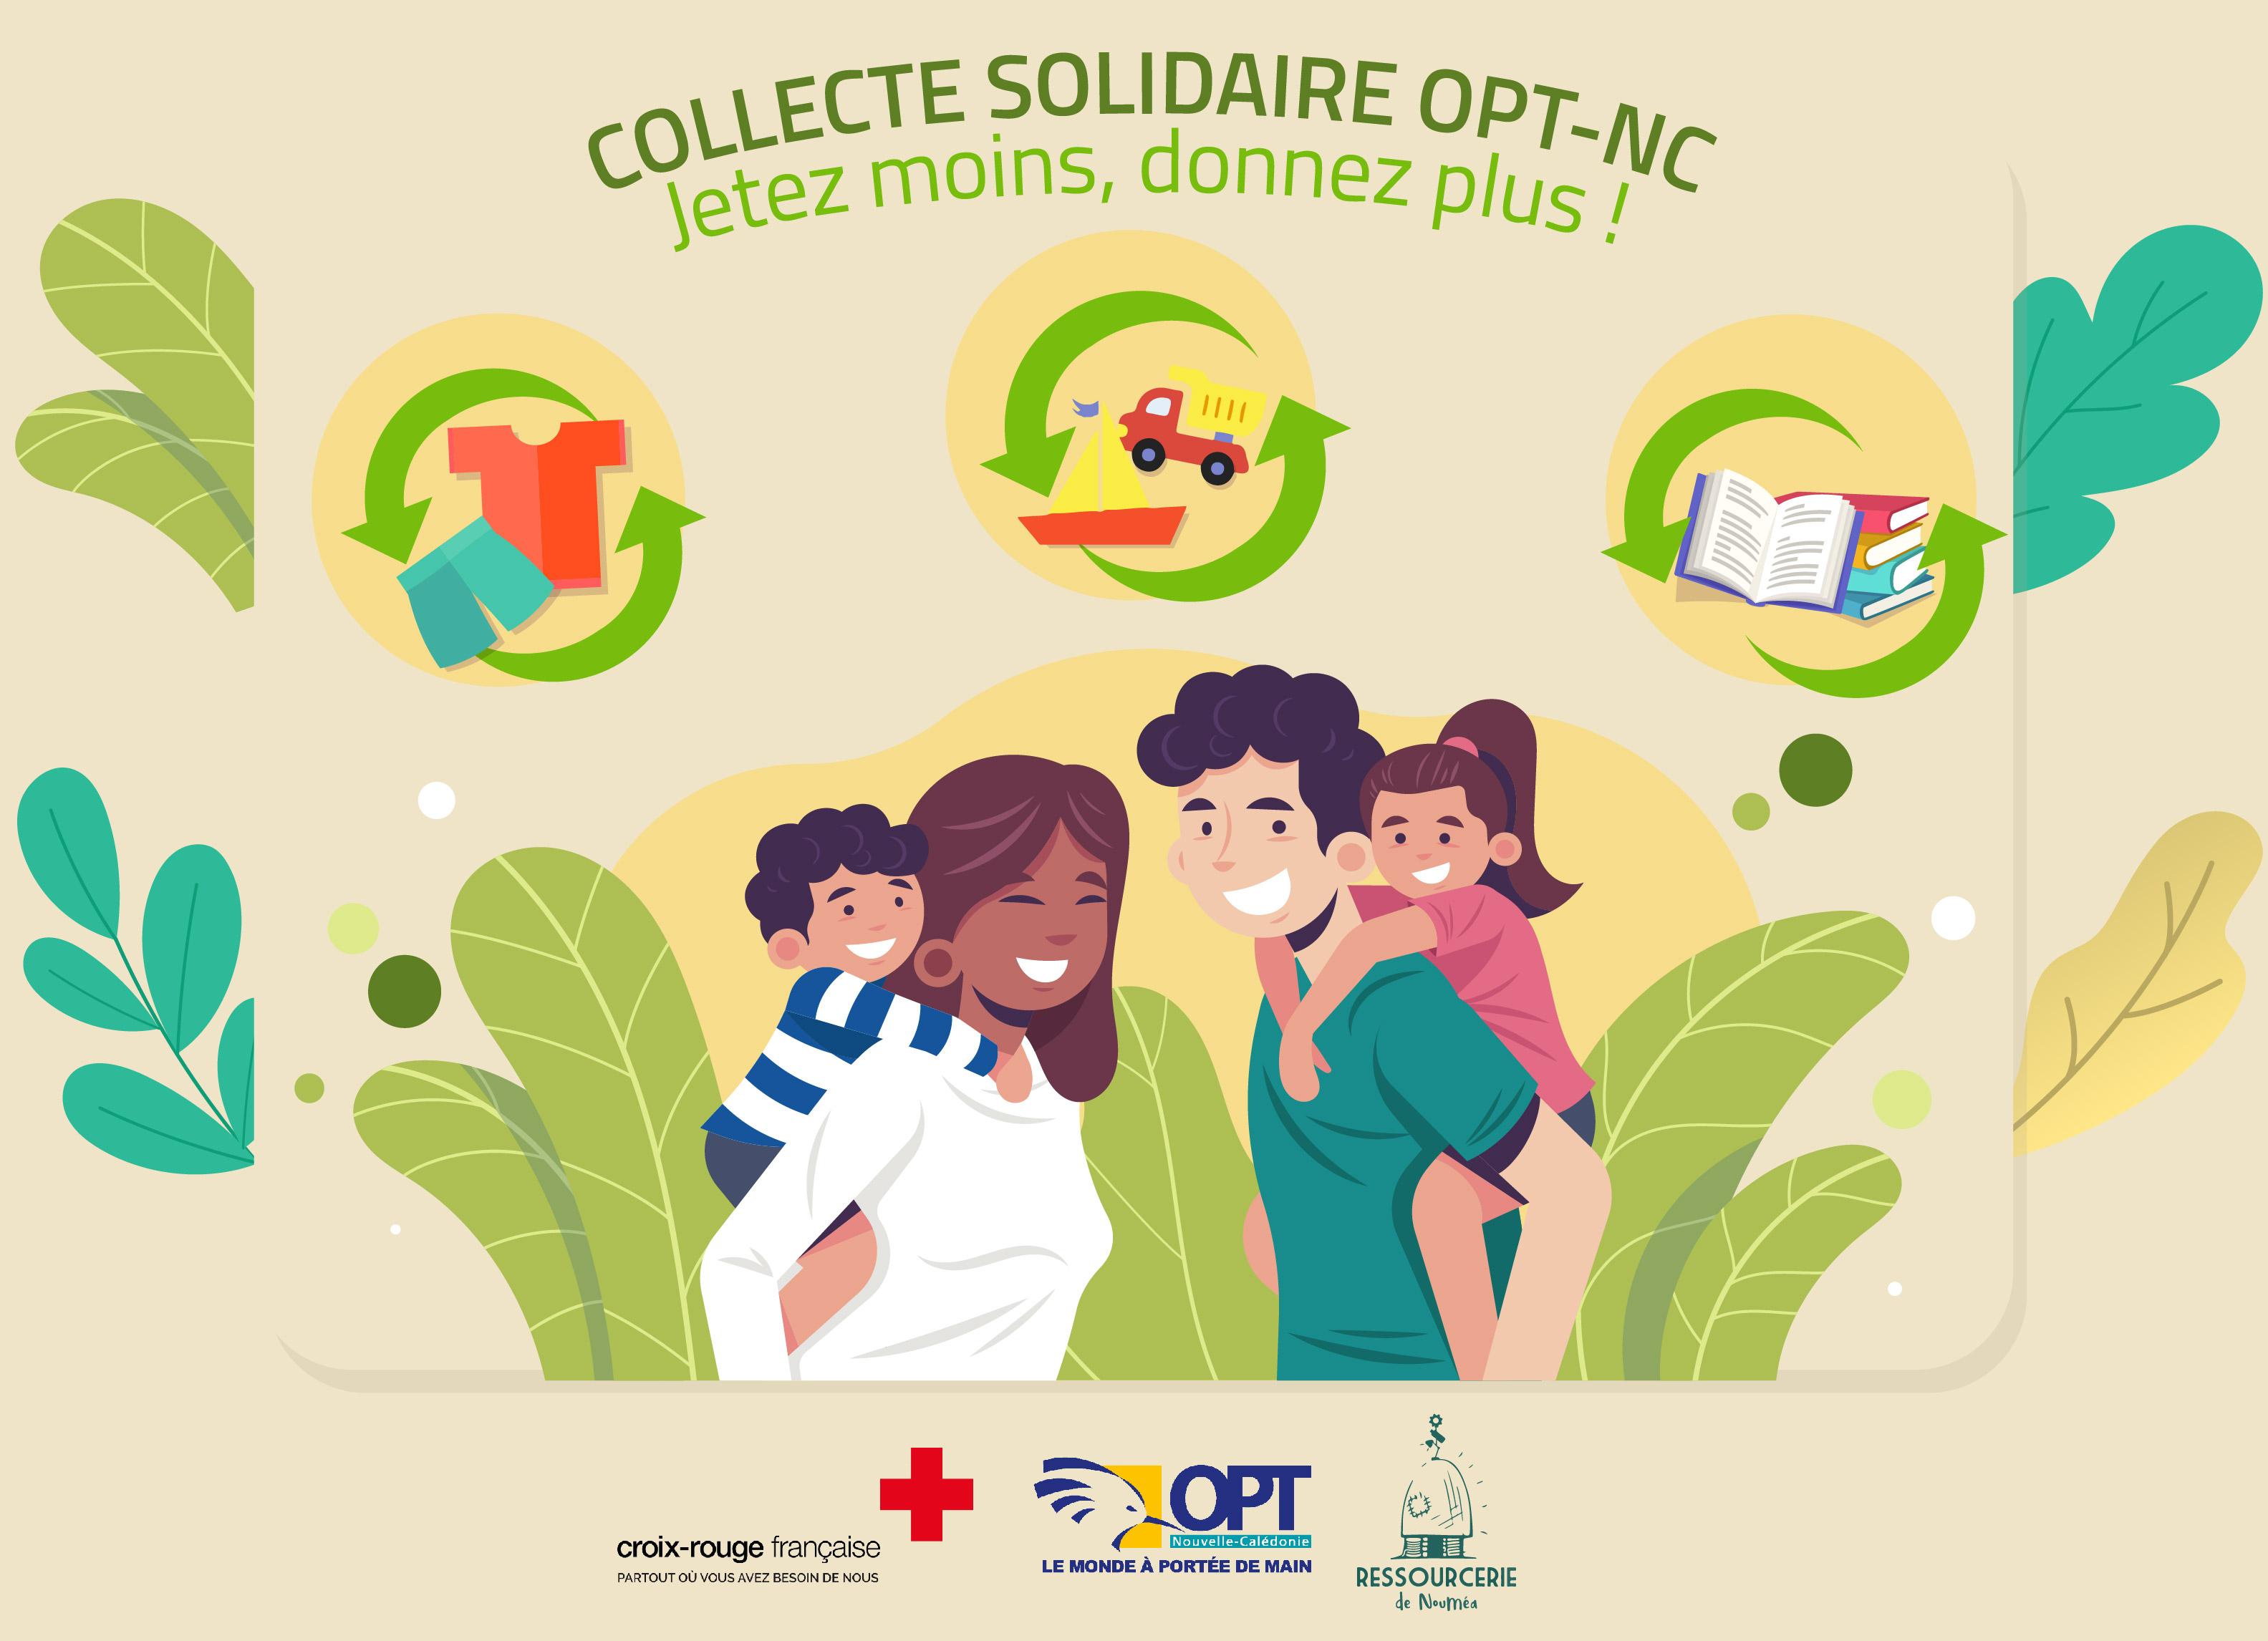 Visuel de la collecte solidaire OPT-NC